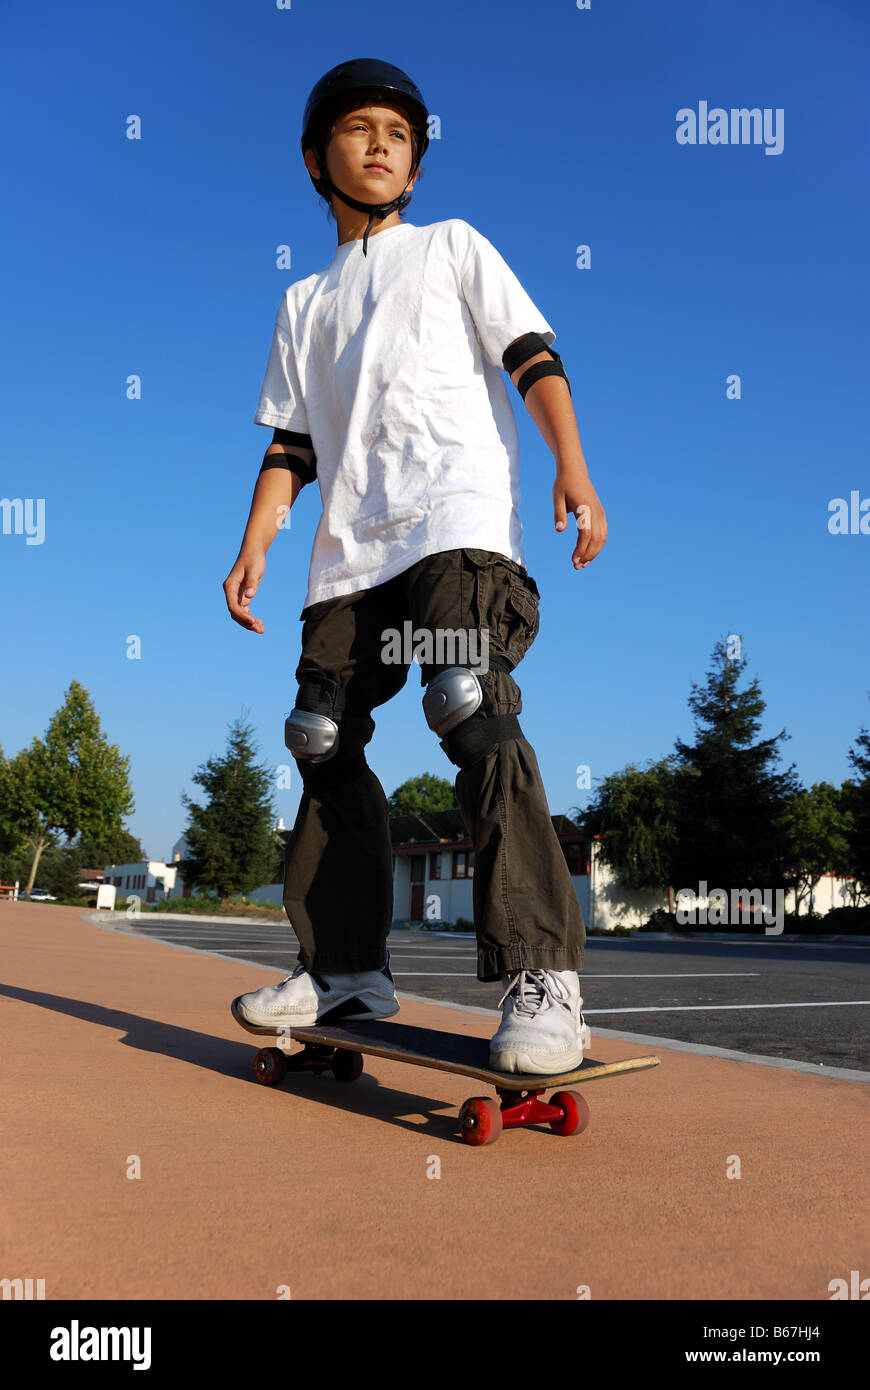 Junge auf einem Skateboard gegen blauen Himmel in der Sonne suchen Stockfoto